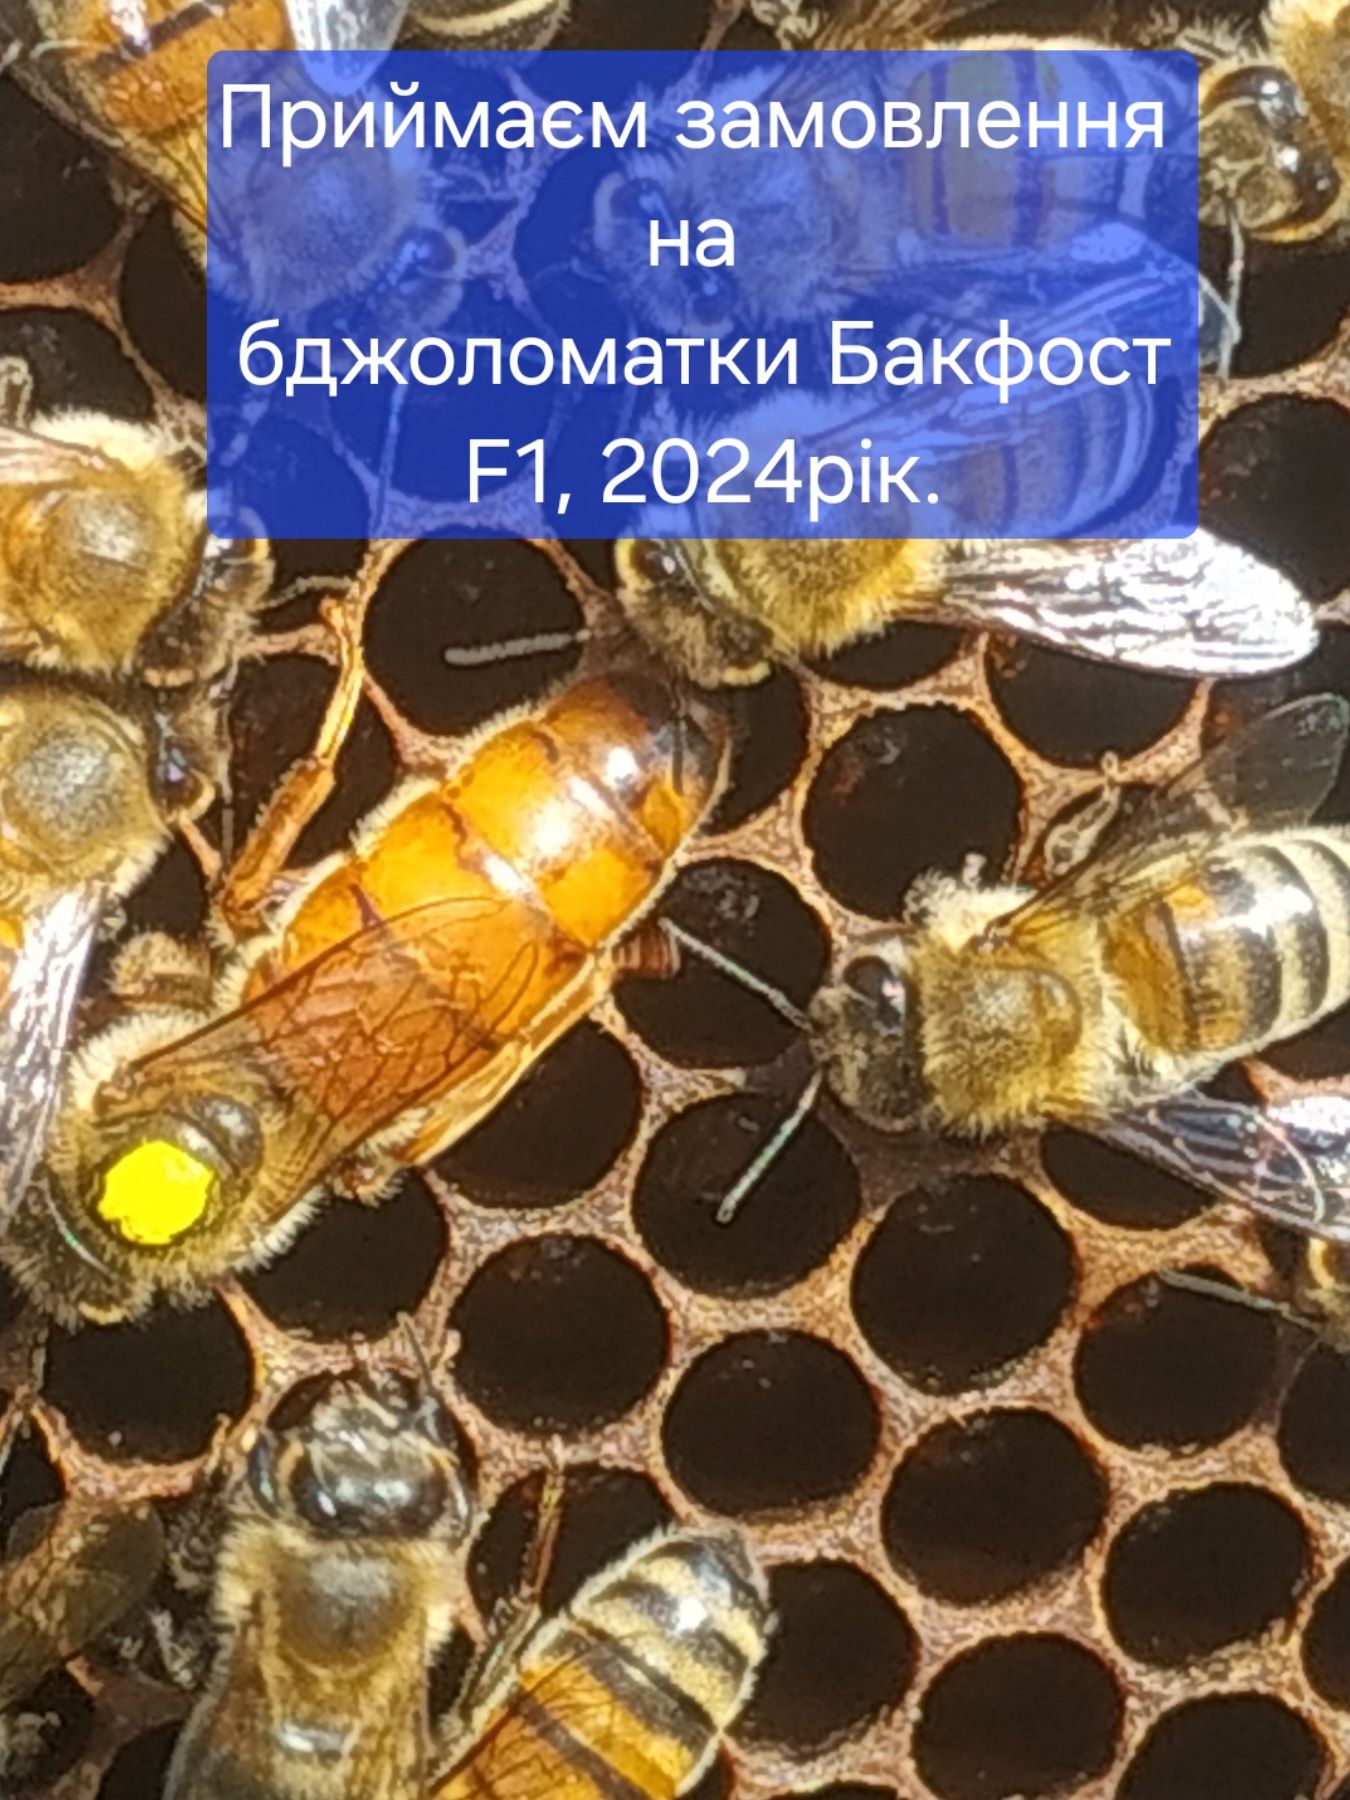 Продаються минулорічні бджоломатки  2023р